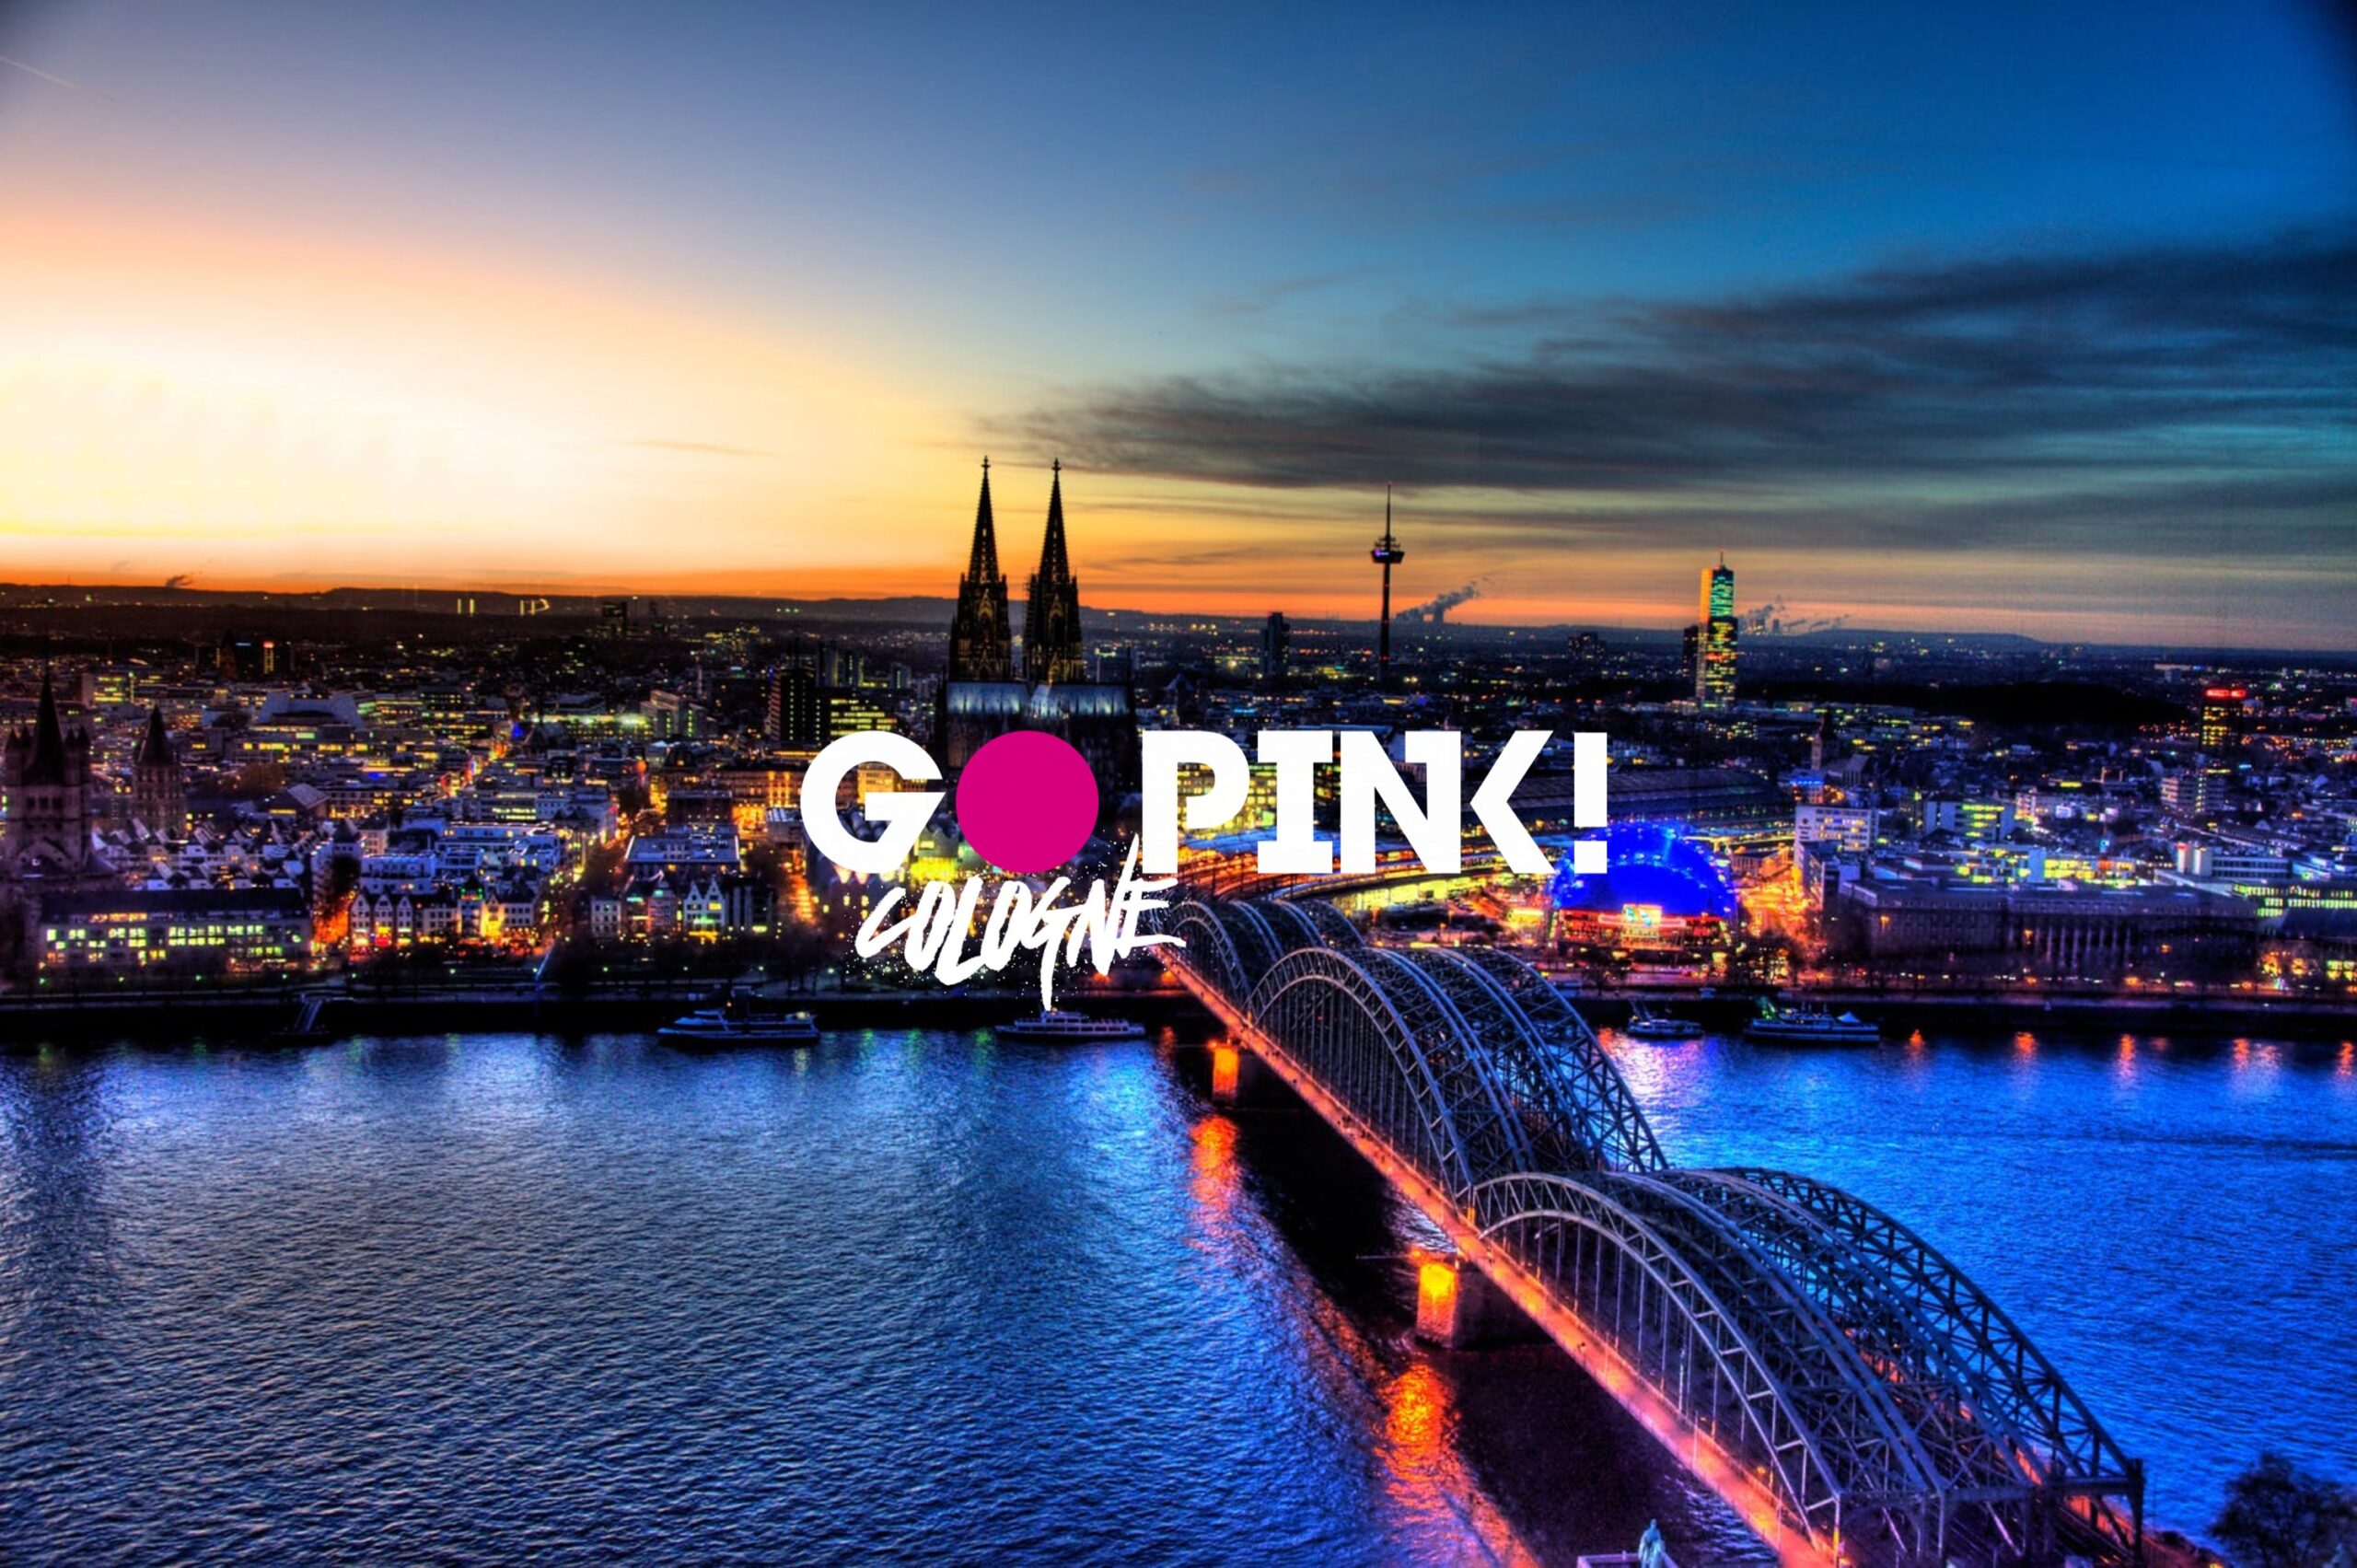 GoPink! Cologne für queere Sichtbarkeit